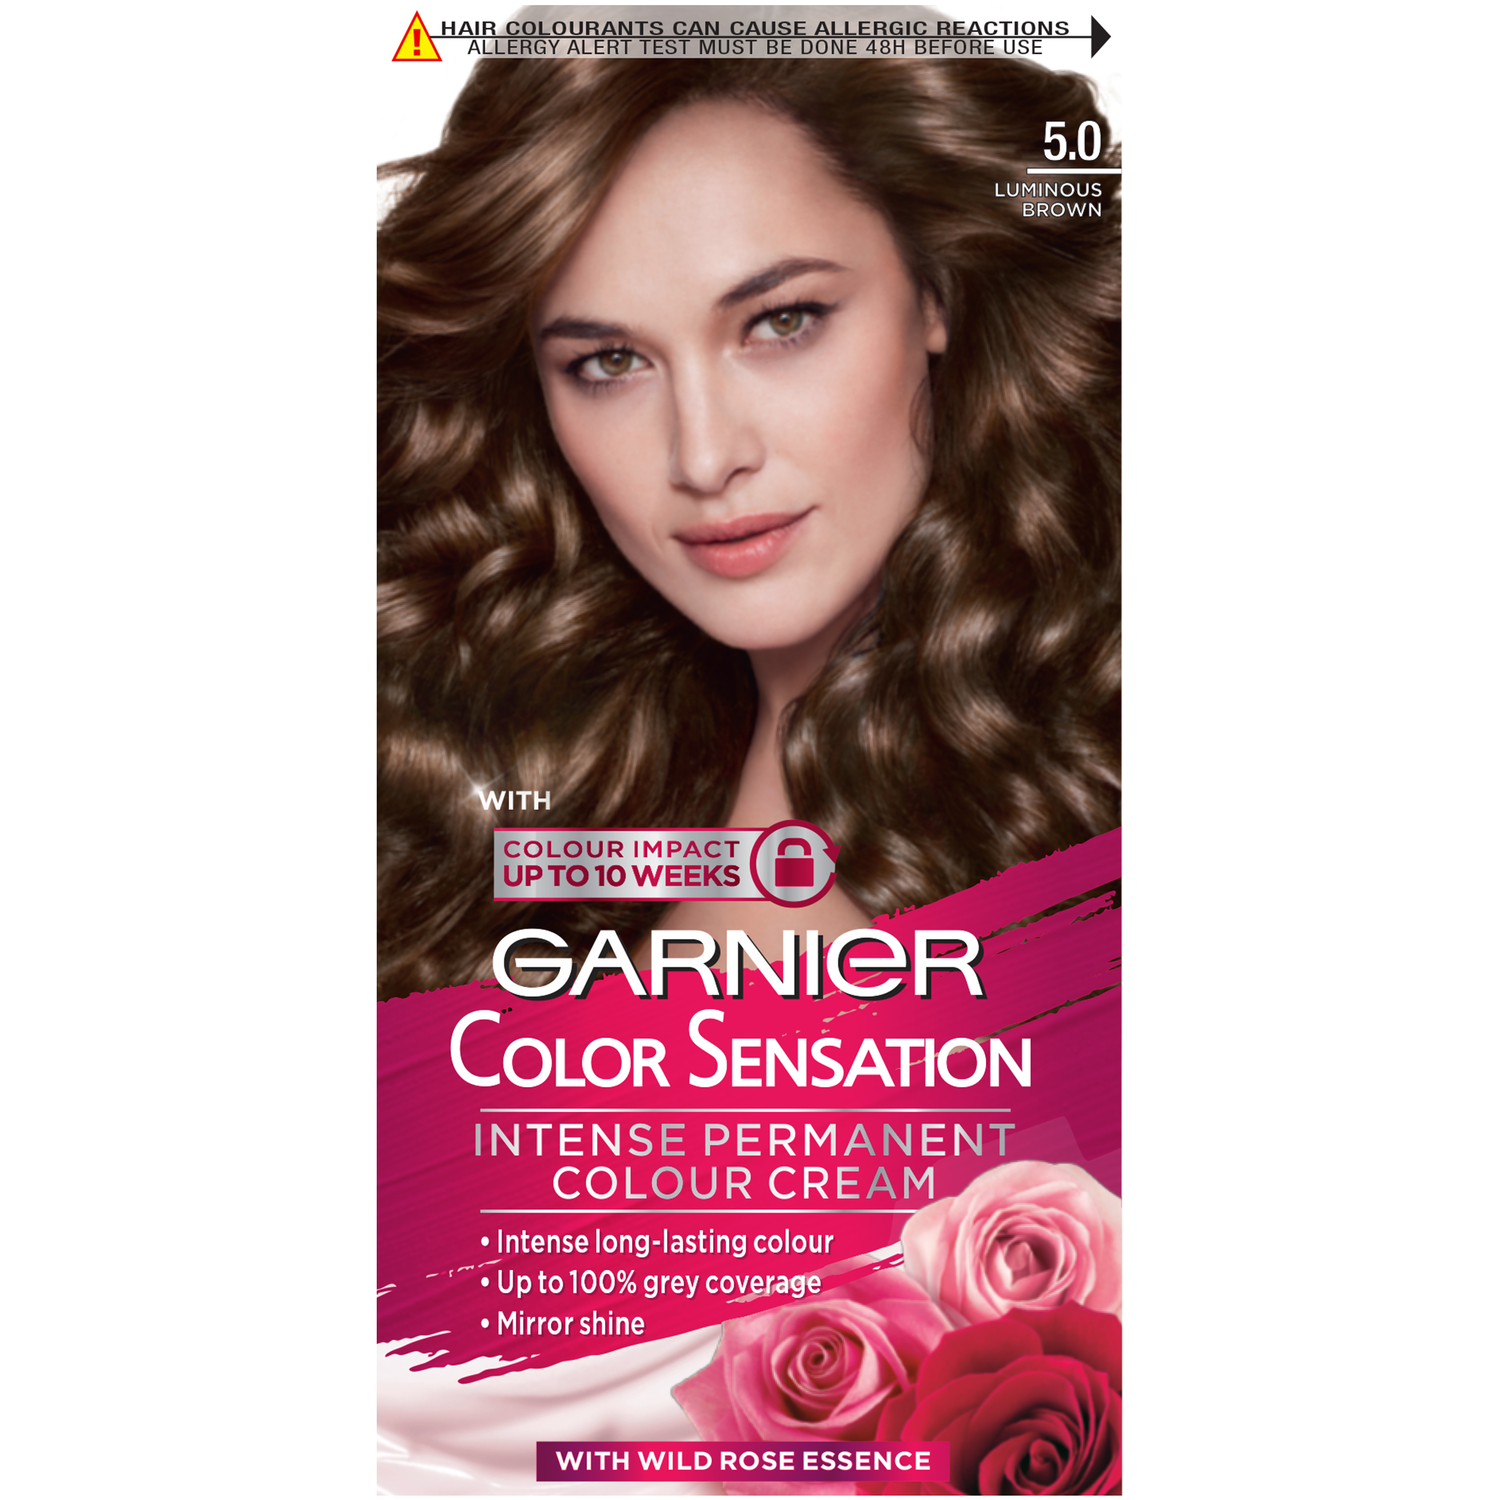 Garnier Colour Sensation Permanent Colour Cream - 5.0 Luminous Brown Image 1